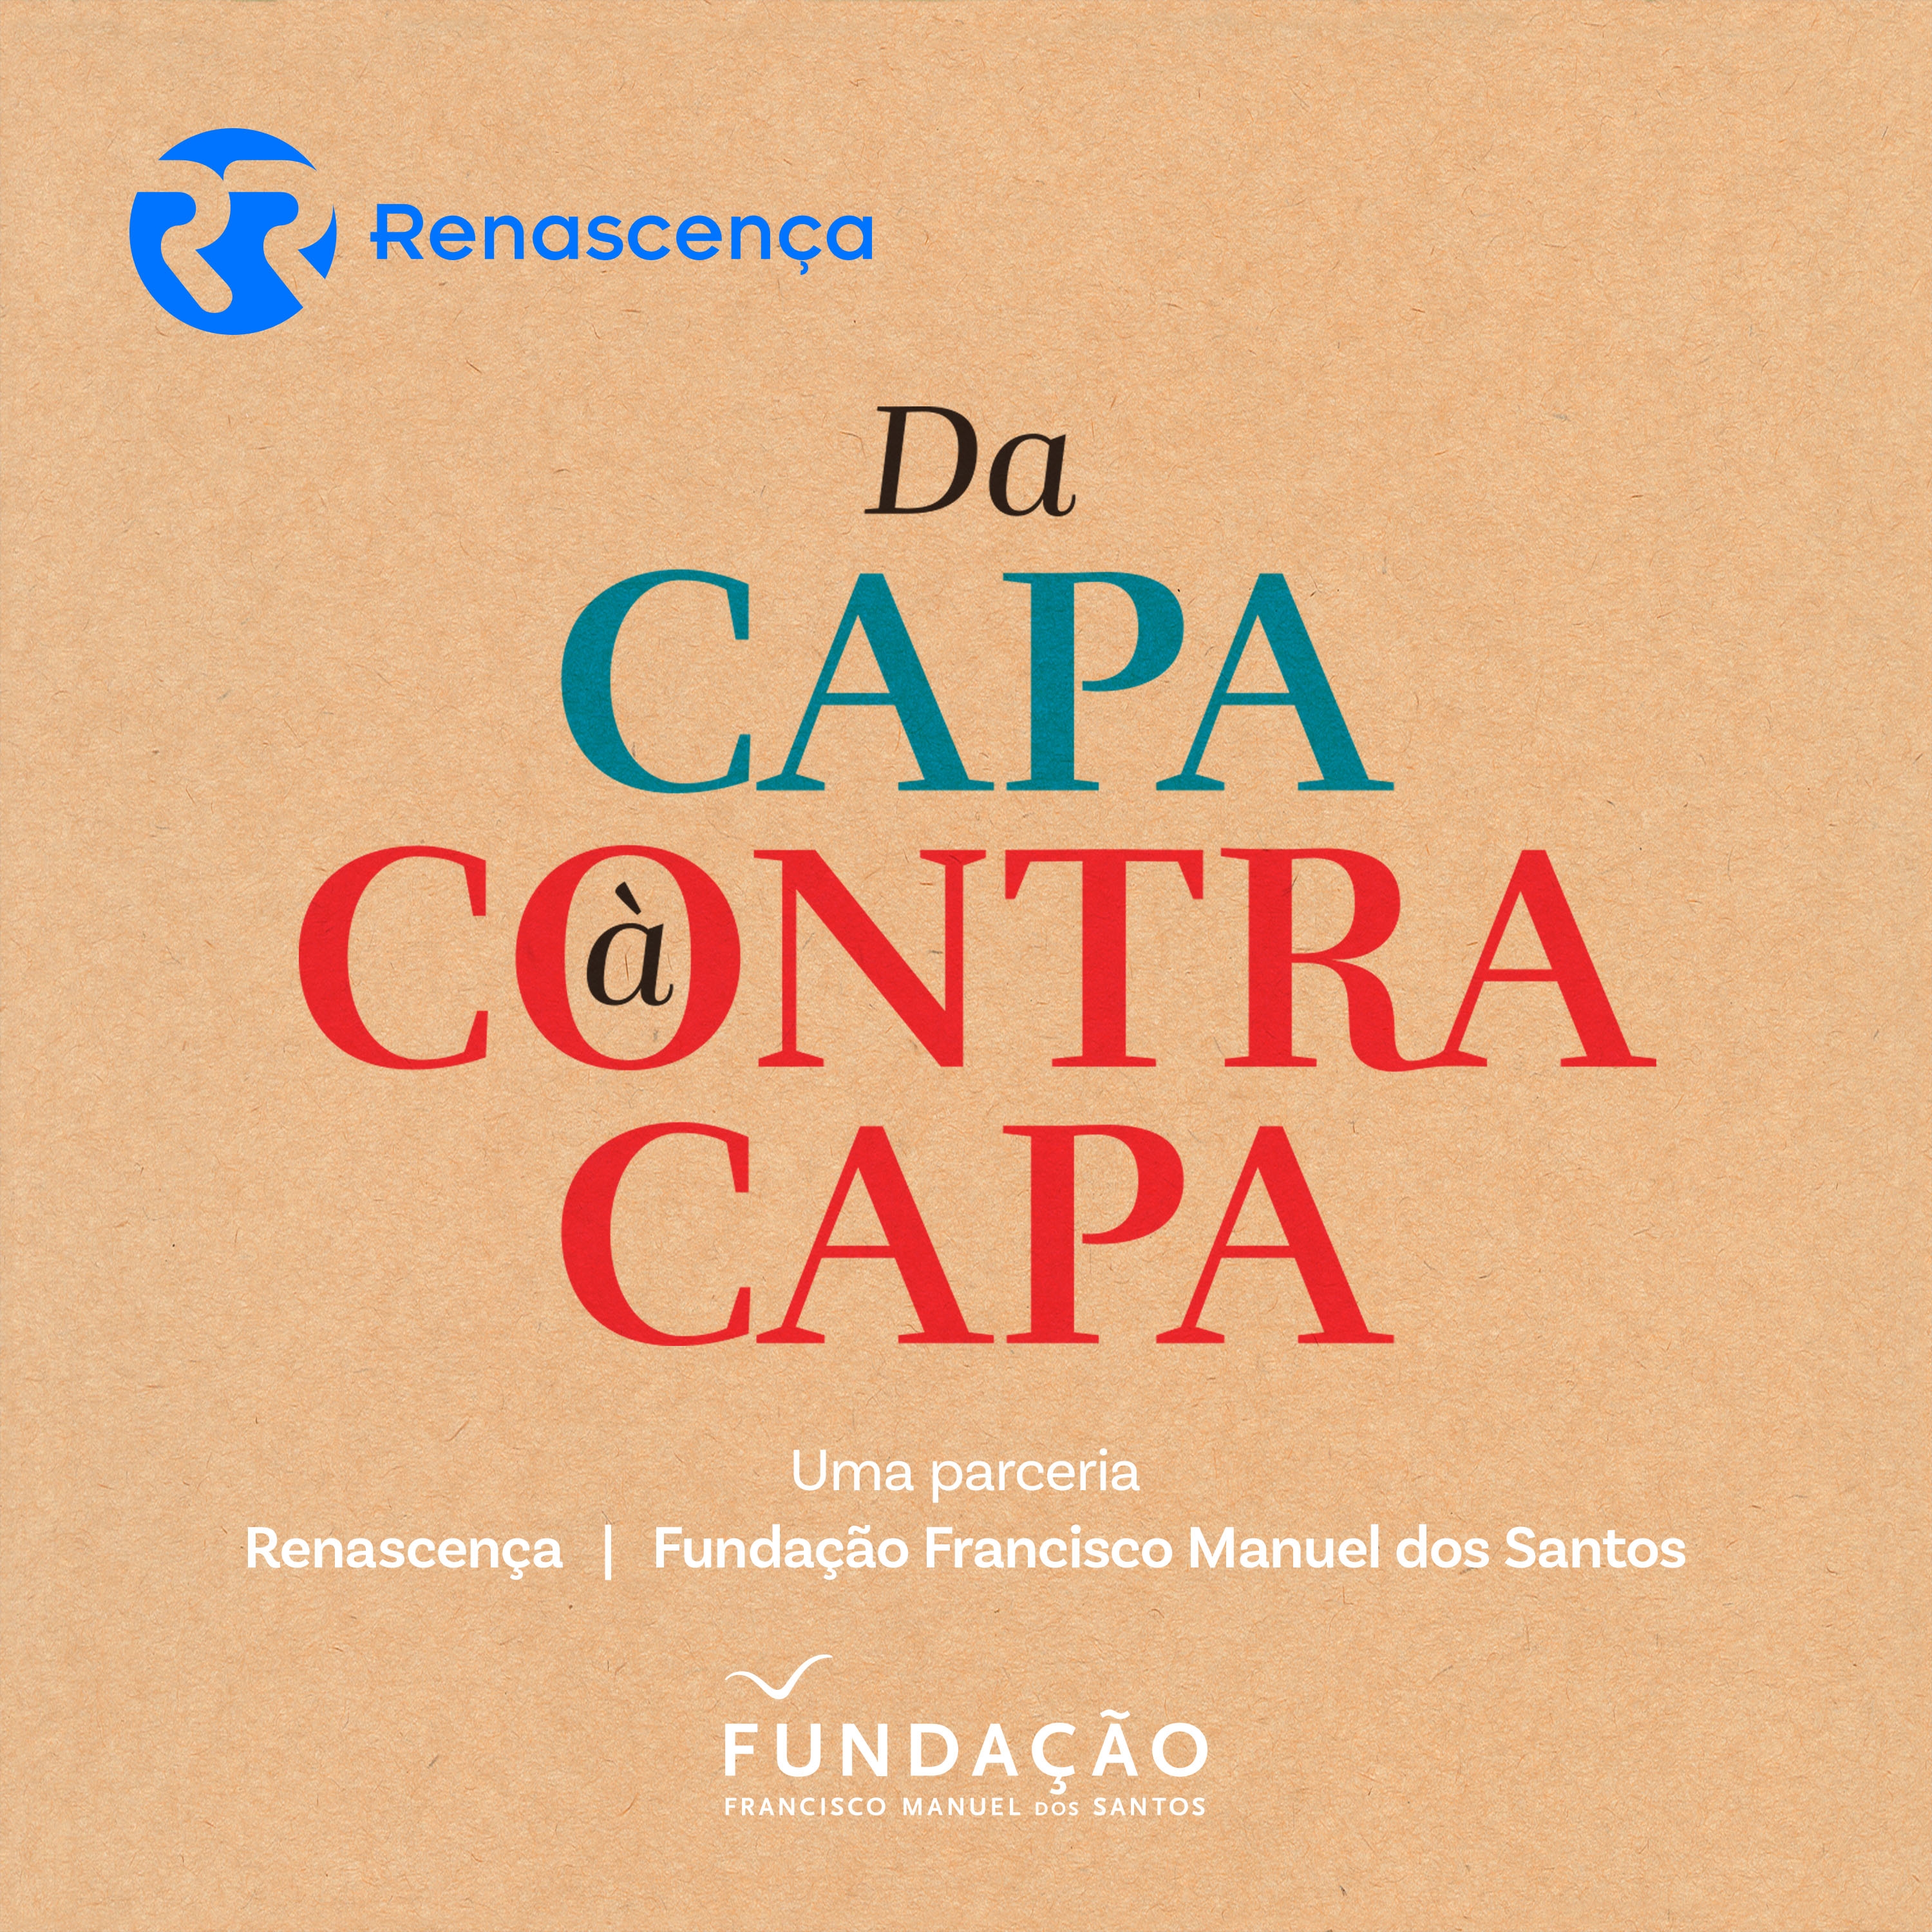 Da Capa à Contracapa - Economia portuguesa - 02/11/2019